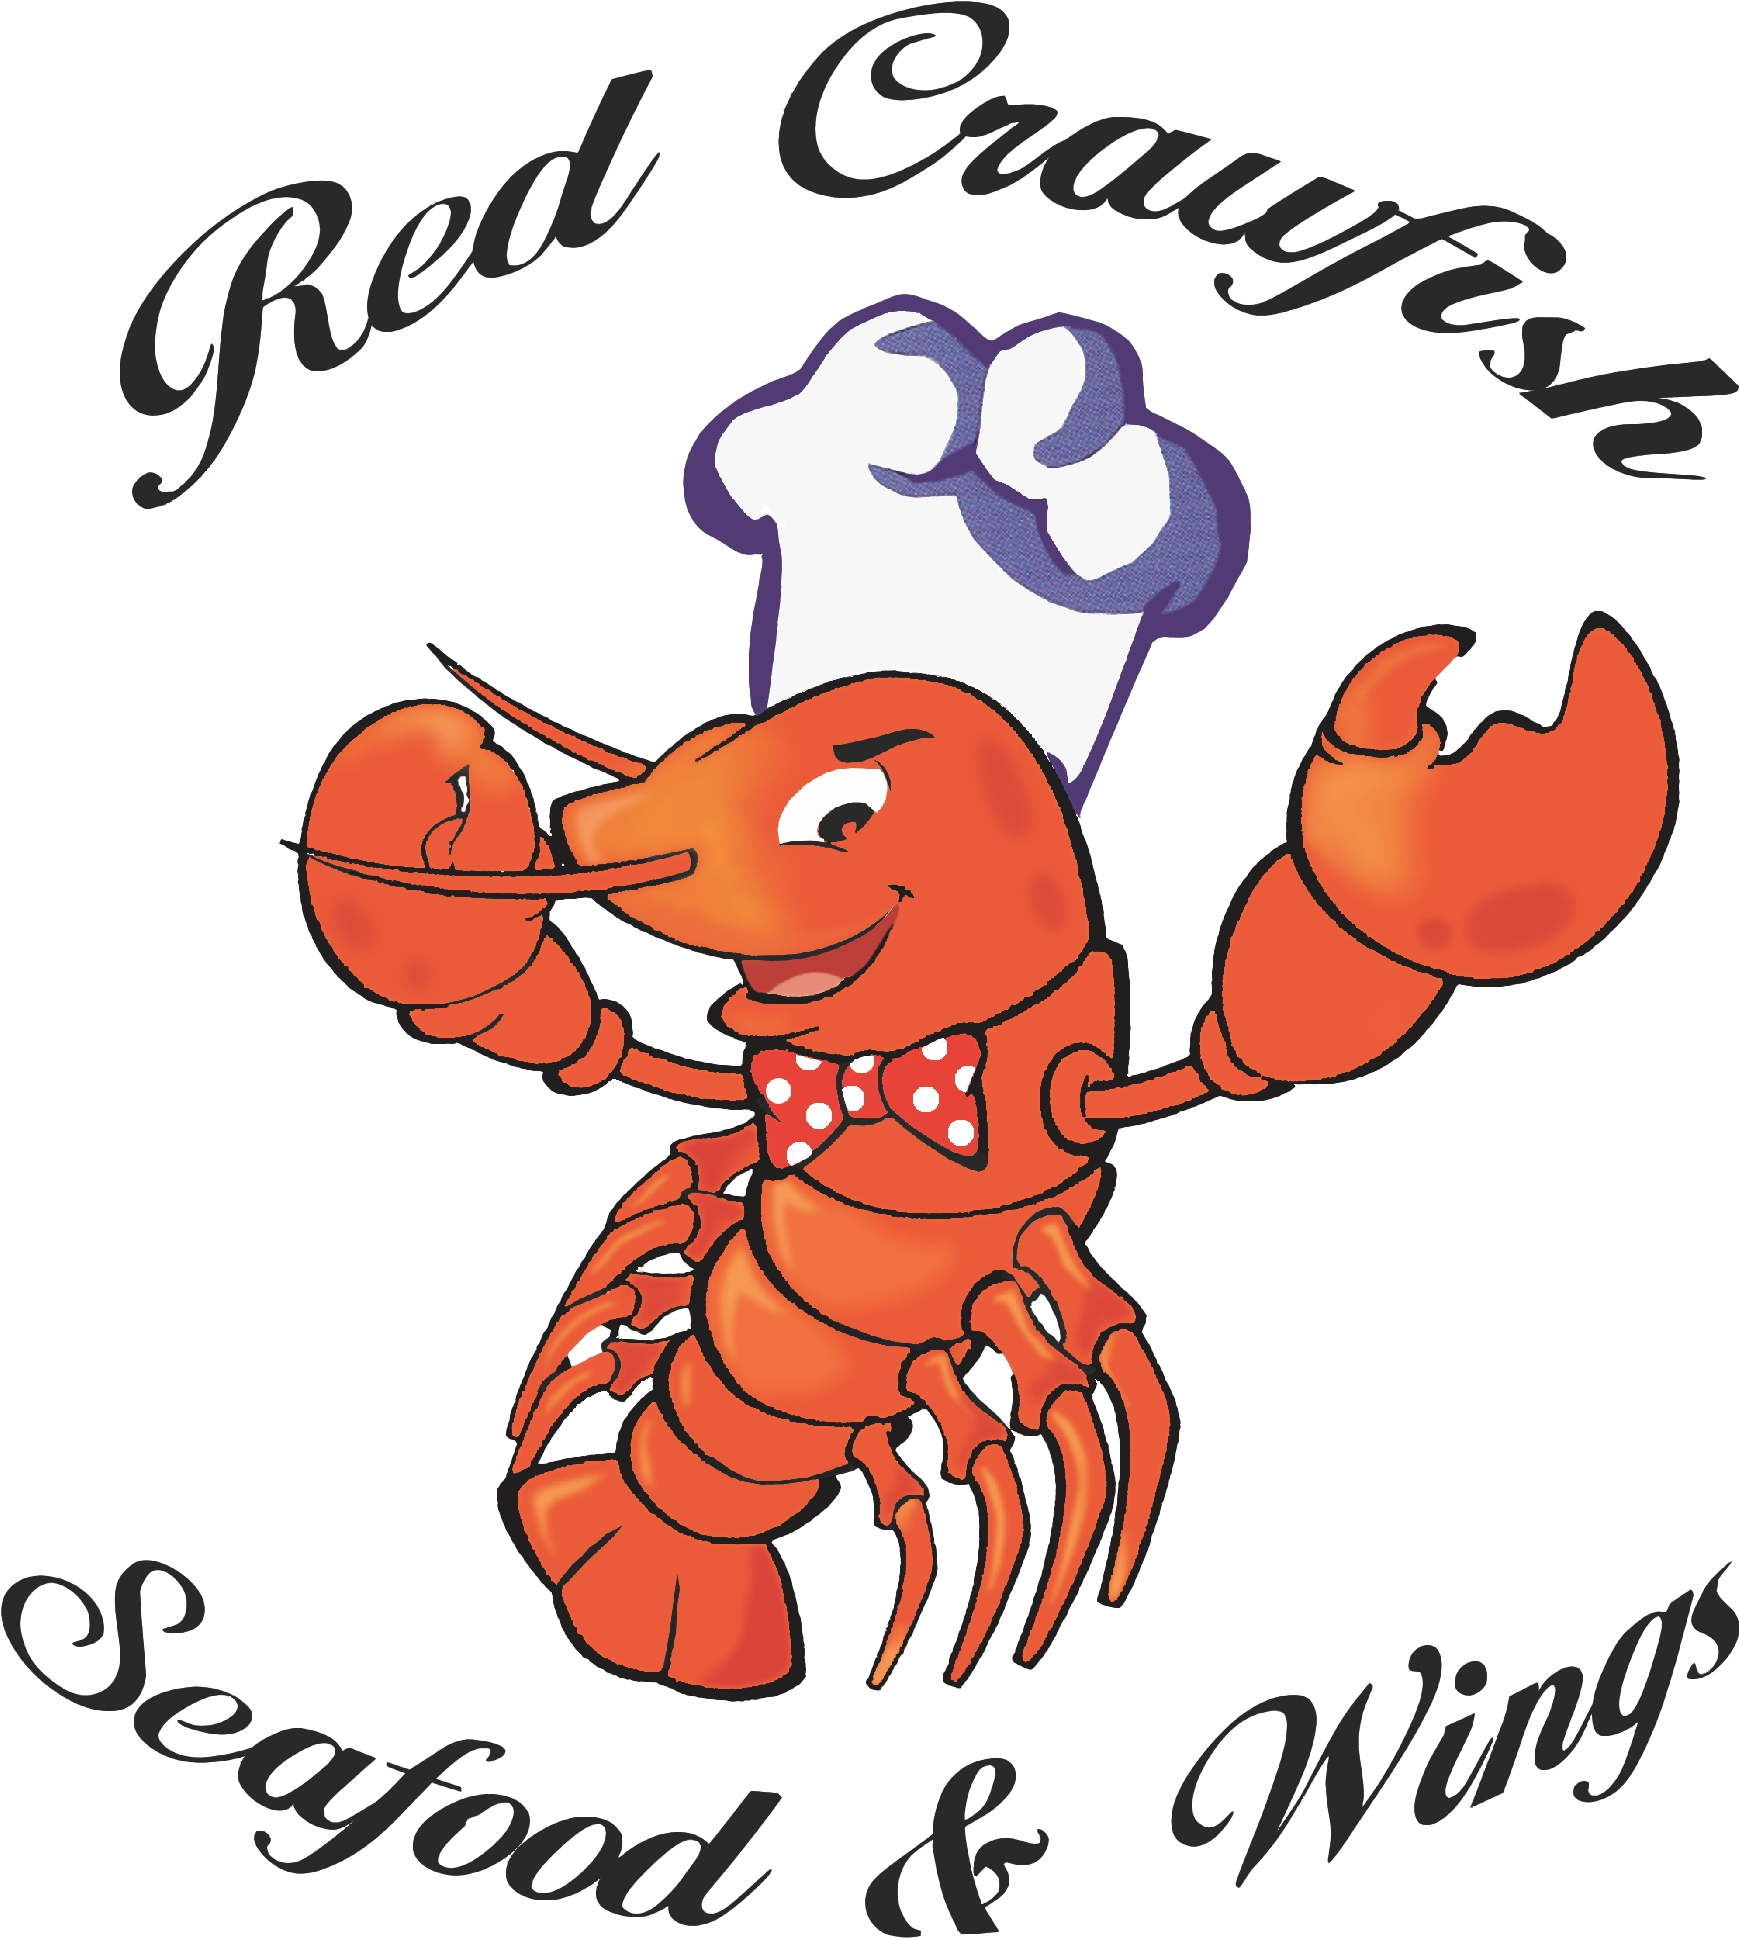 Red Crawfish Logo Clipped Rev - Red Crawfish (1978x2120)